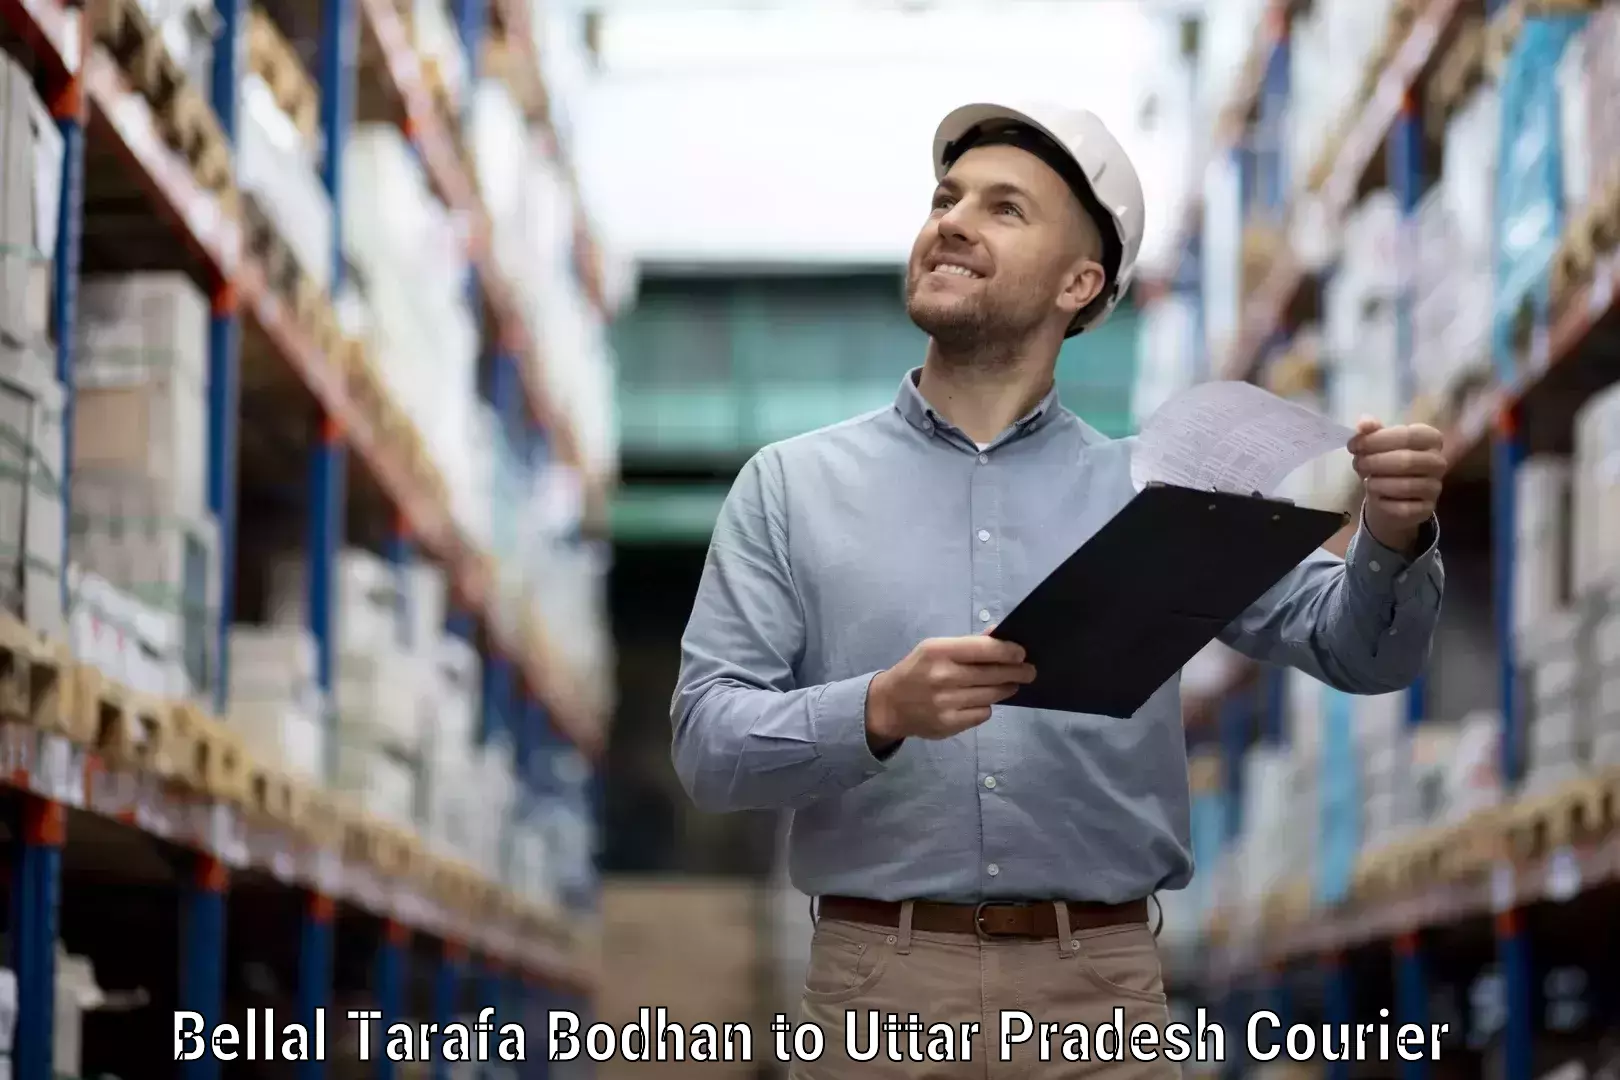 Fast shipping solutions Bellal Tarafa Bodhan to Uttar Pradesh